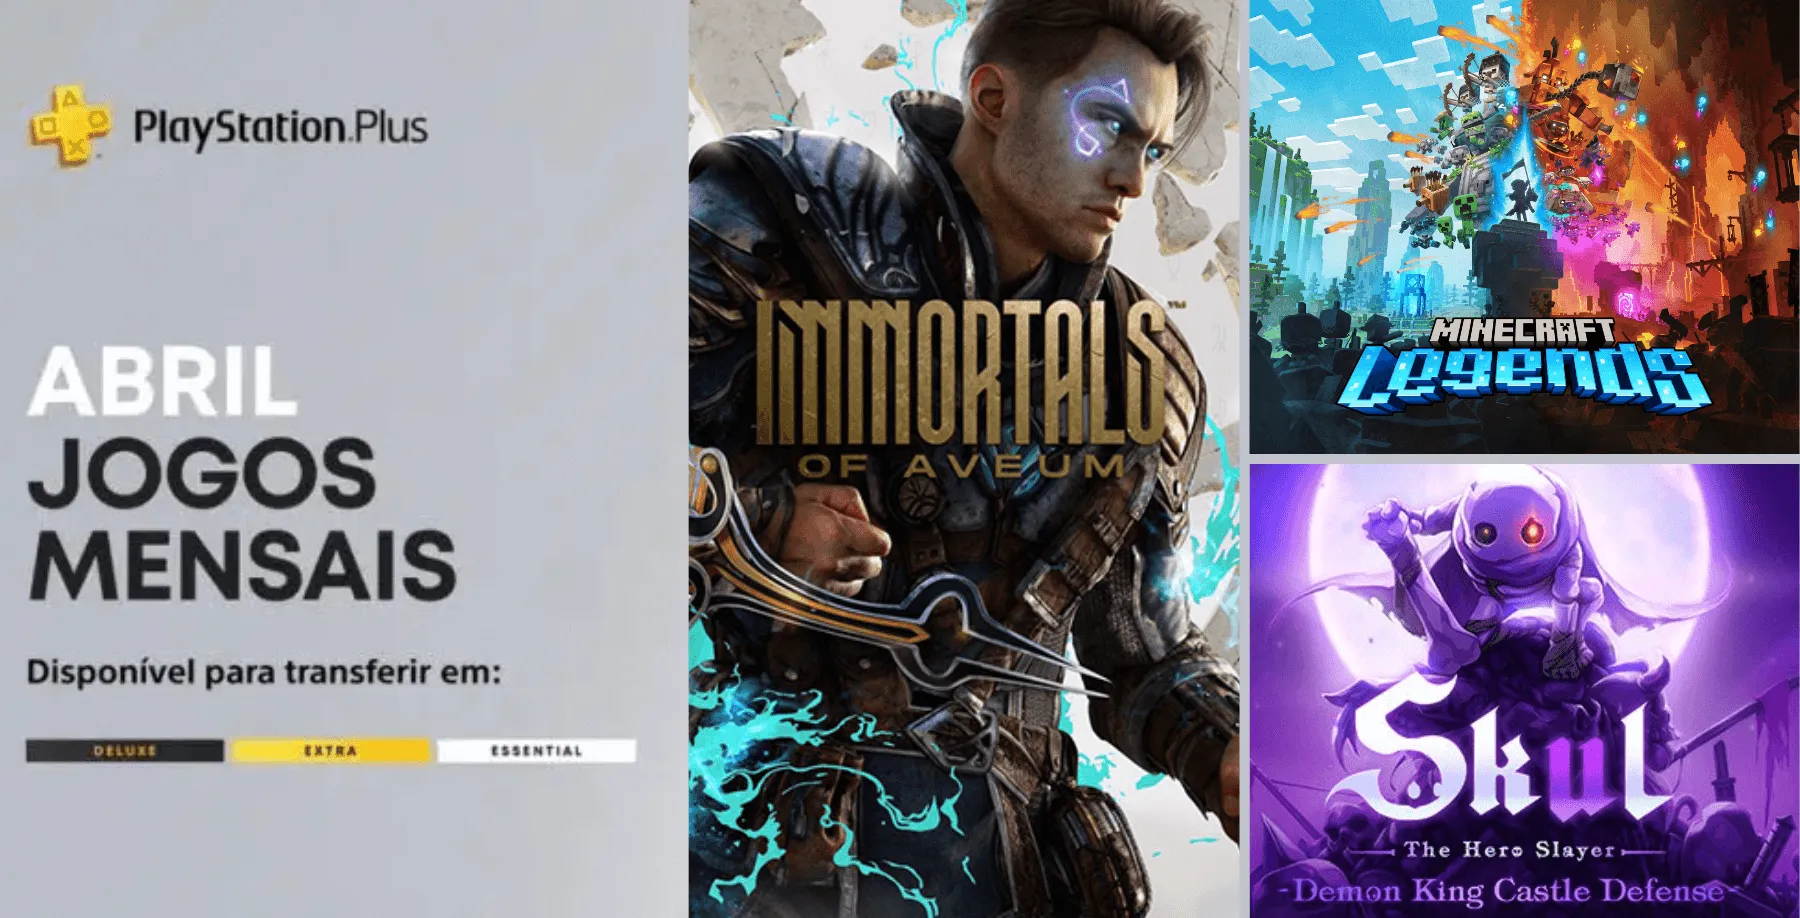 Imagem da PS Plus de abril a esquerda e as capas dos jogos Immortals of Aveum, Minecraft Legends e Skul: The Hero Slayer a direita